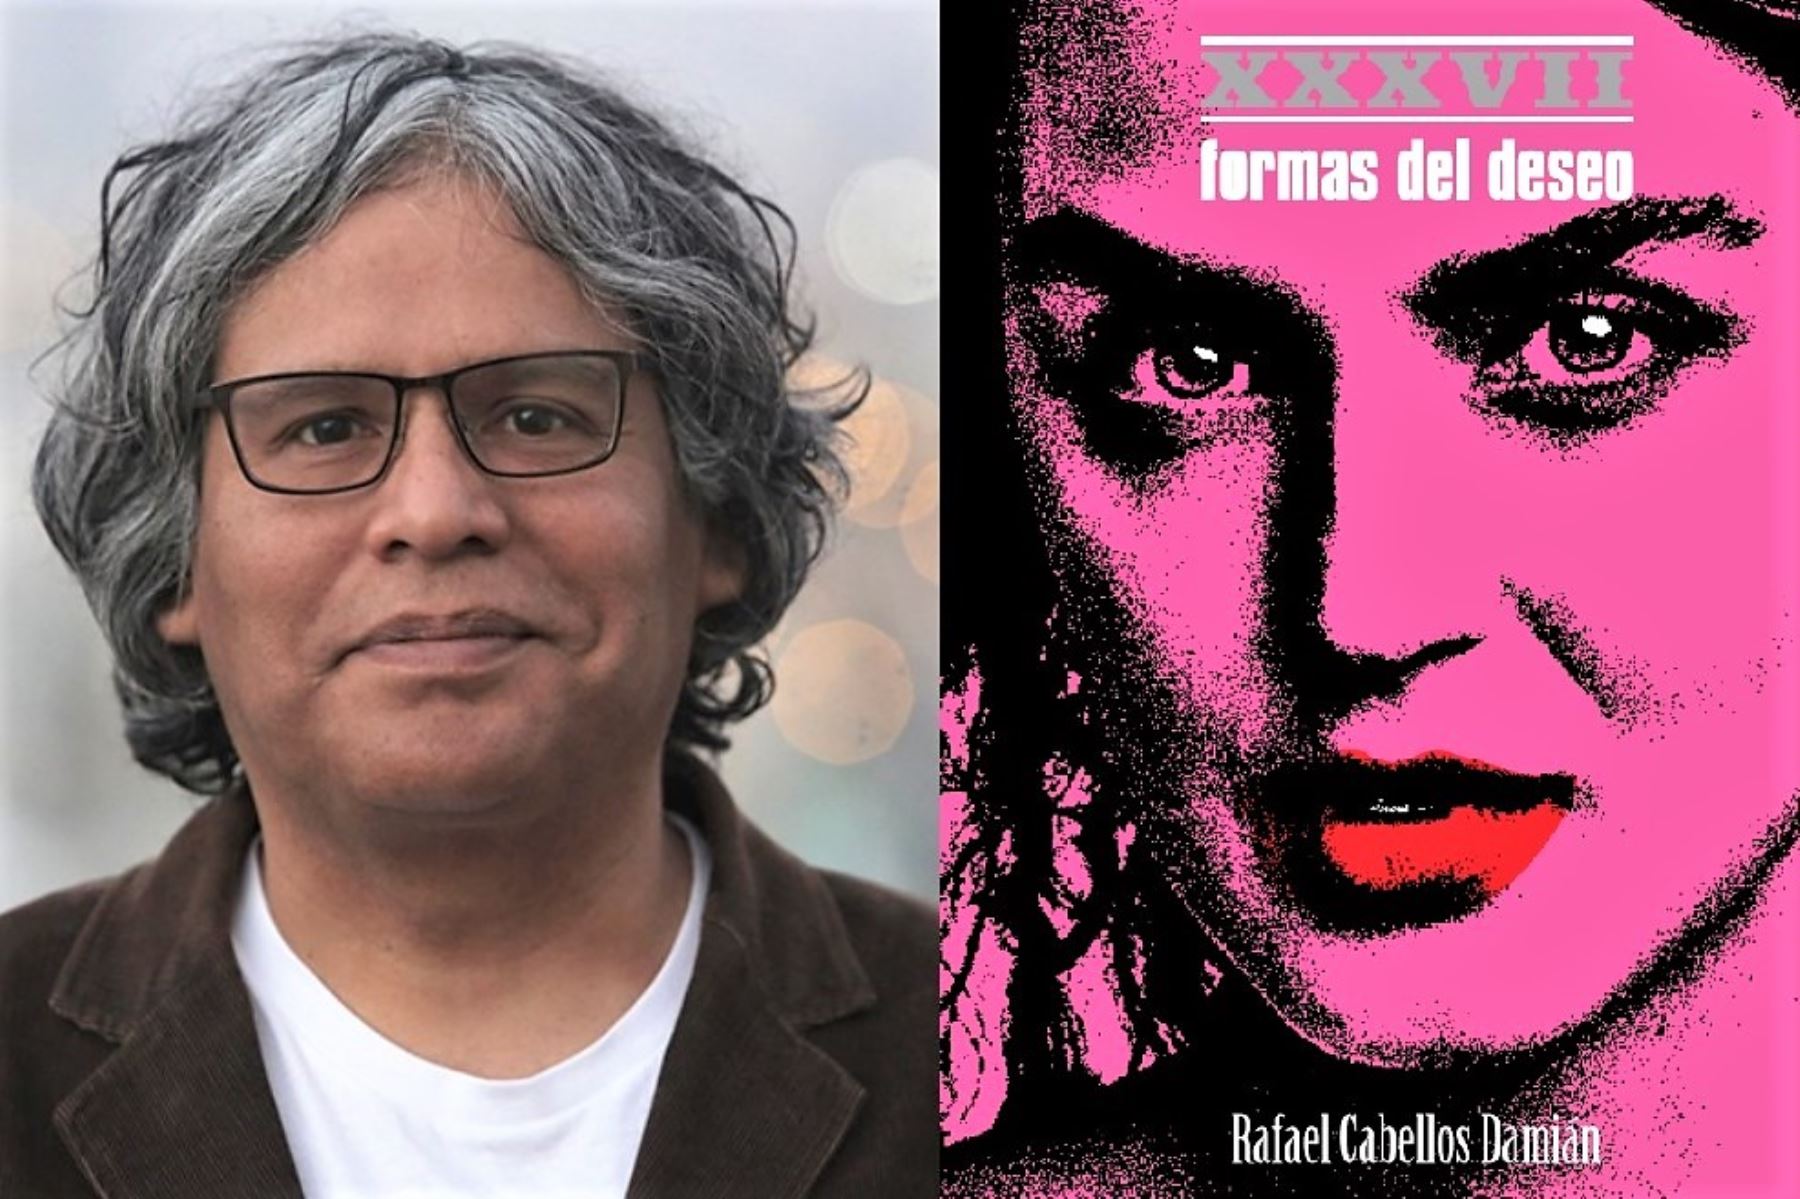 El poeta Rafael Cabellos presenta 